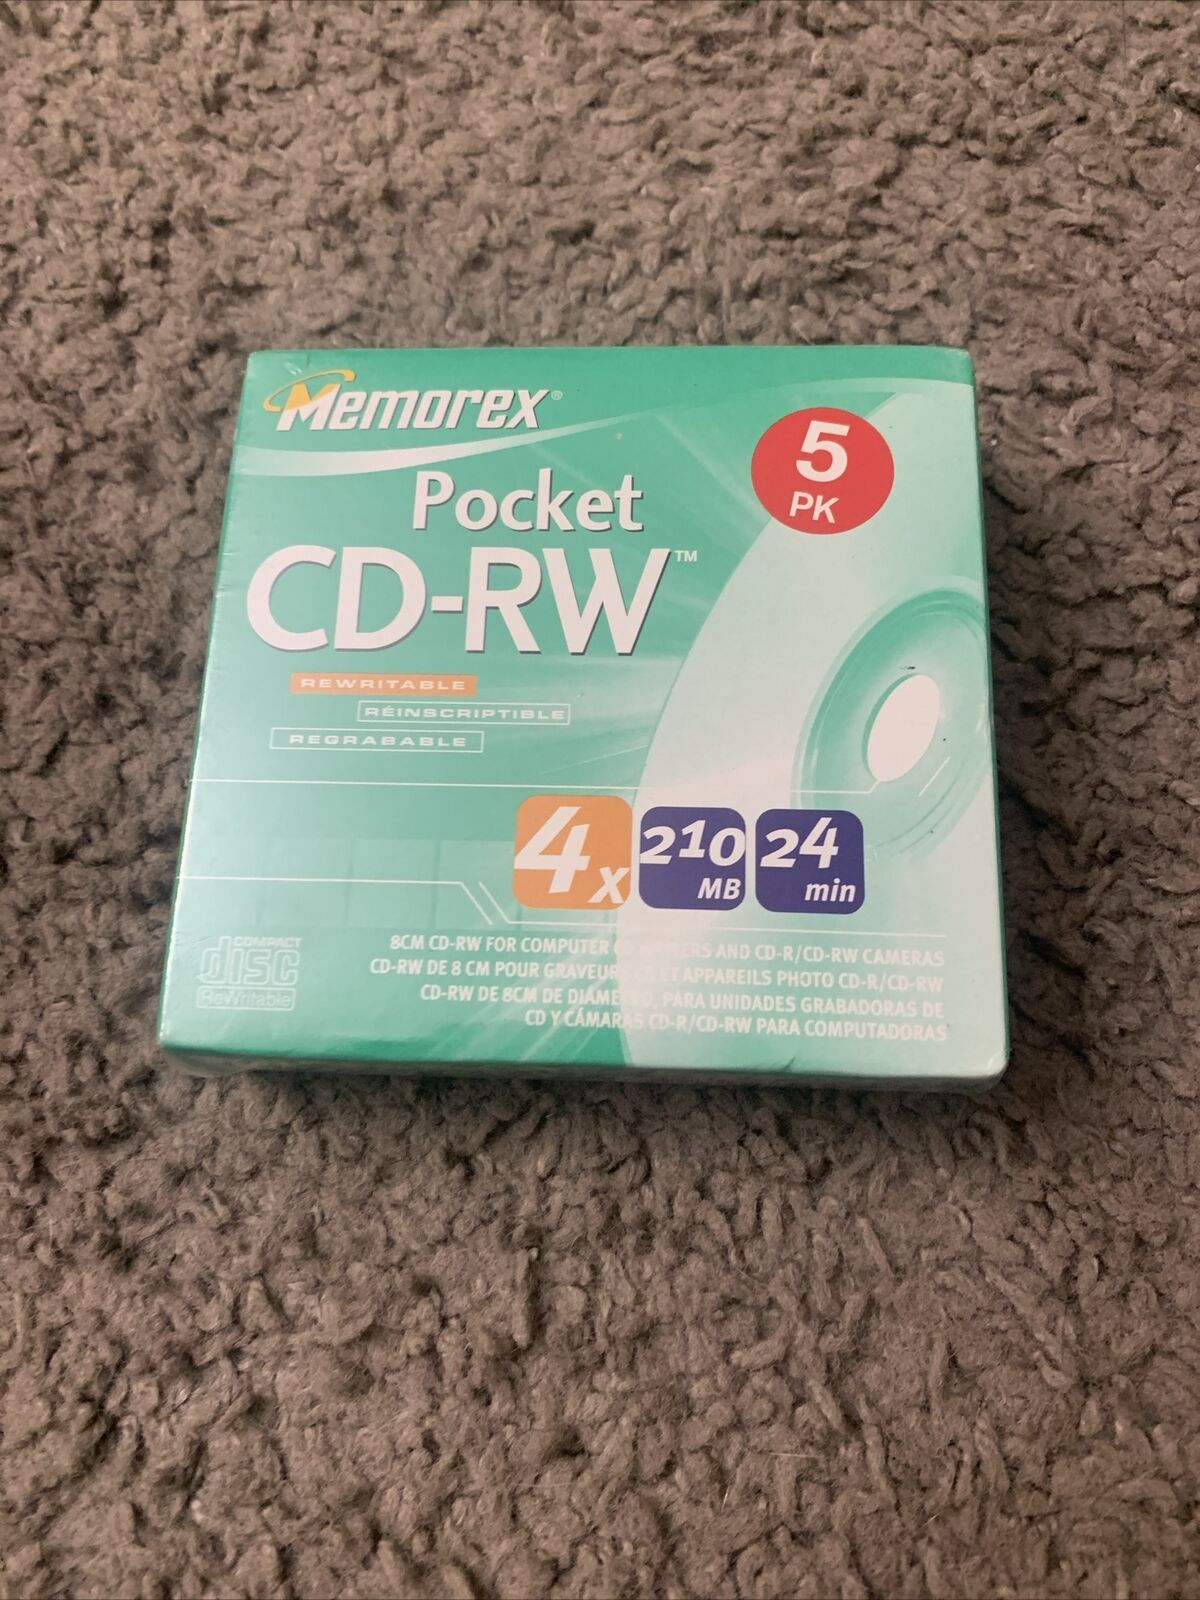 Memorex Pocket CD-RW 4x210 MB 24 min Blank Mini Discs 5 Pack NEW/SEALED 10 Total